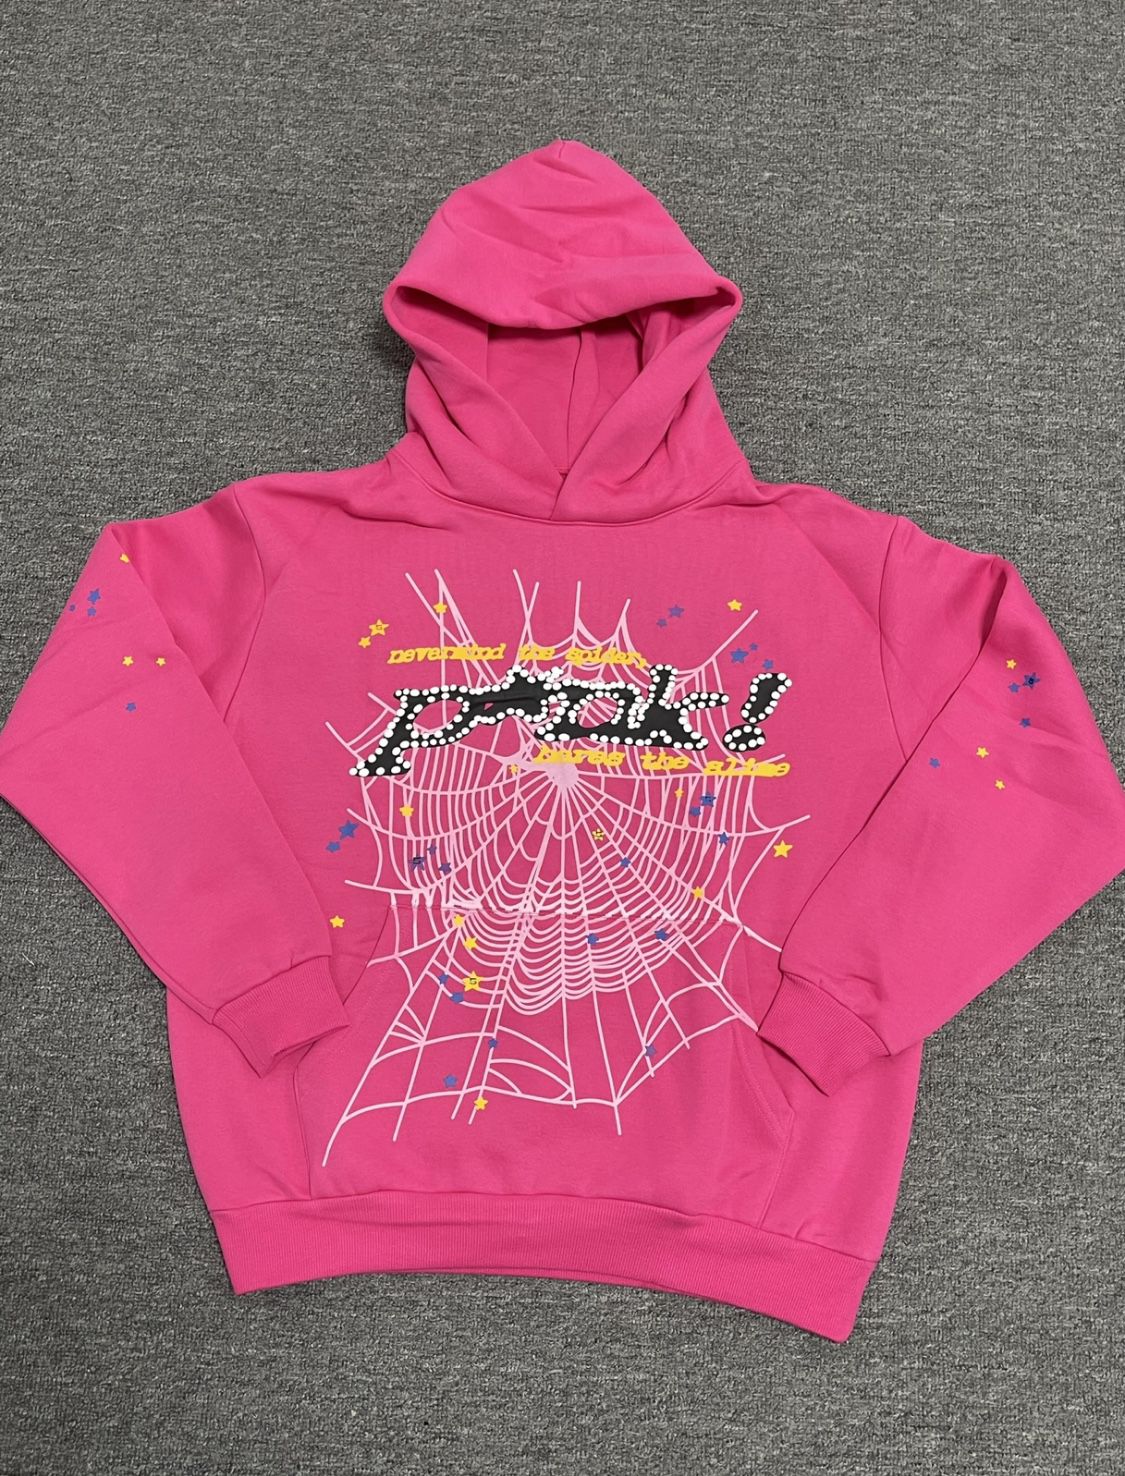 Pink Sp5der hoodie